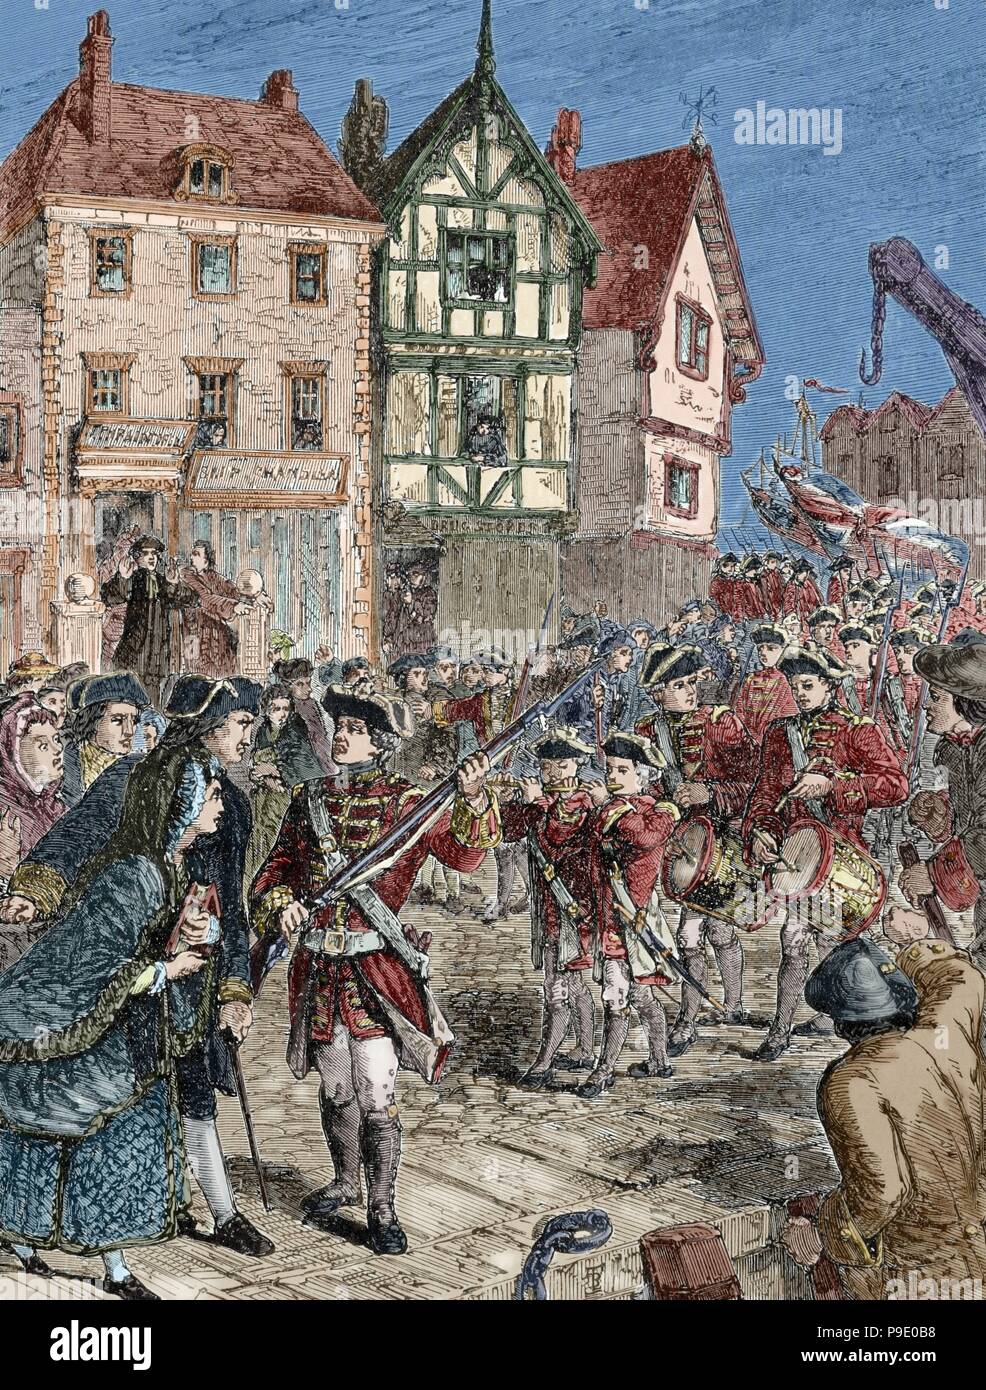 Amerikanischer Unabhängigkeitskrieg (1775-1783). Boston. Bürgerinnen und Bürger feindselig gegenüber den britischen Soldaten. Gravur. des 19. Jahrhunderts. Farbige. Stockfoto